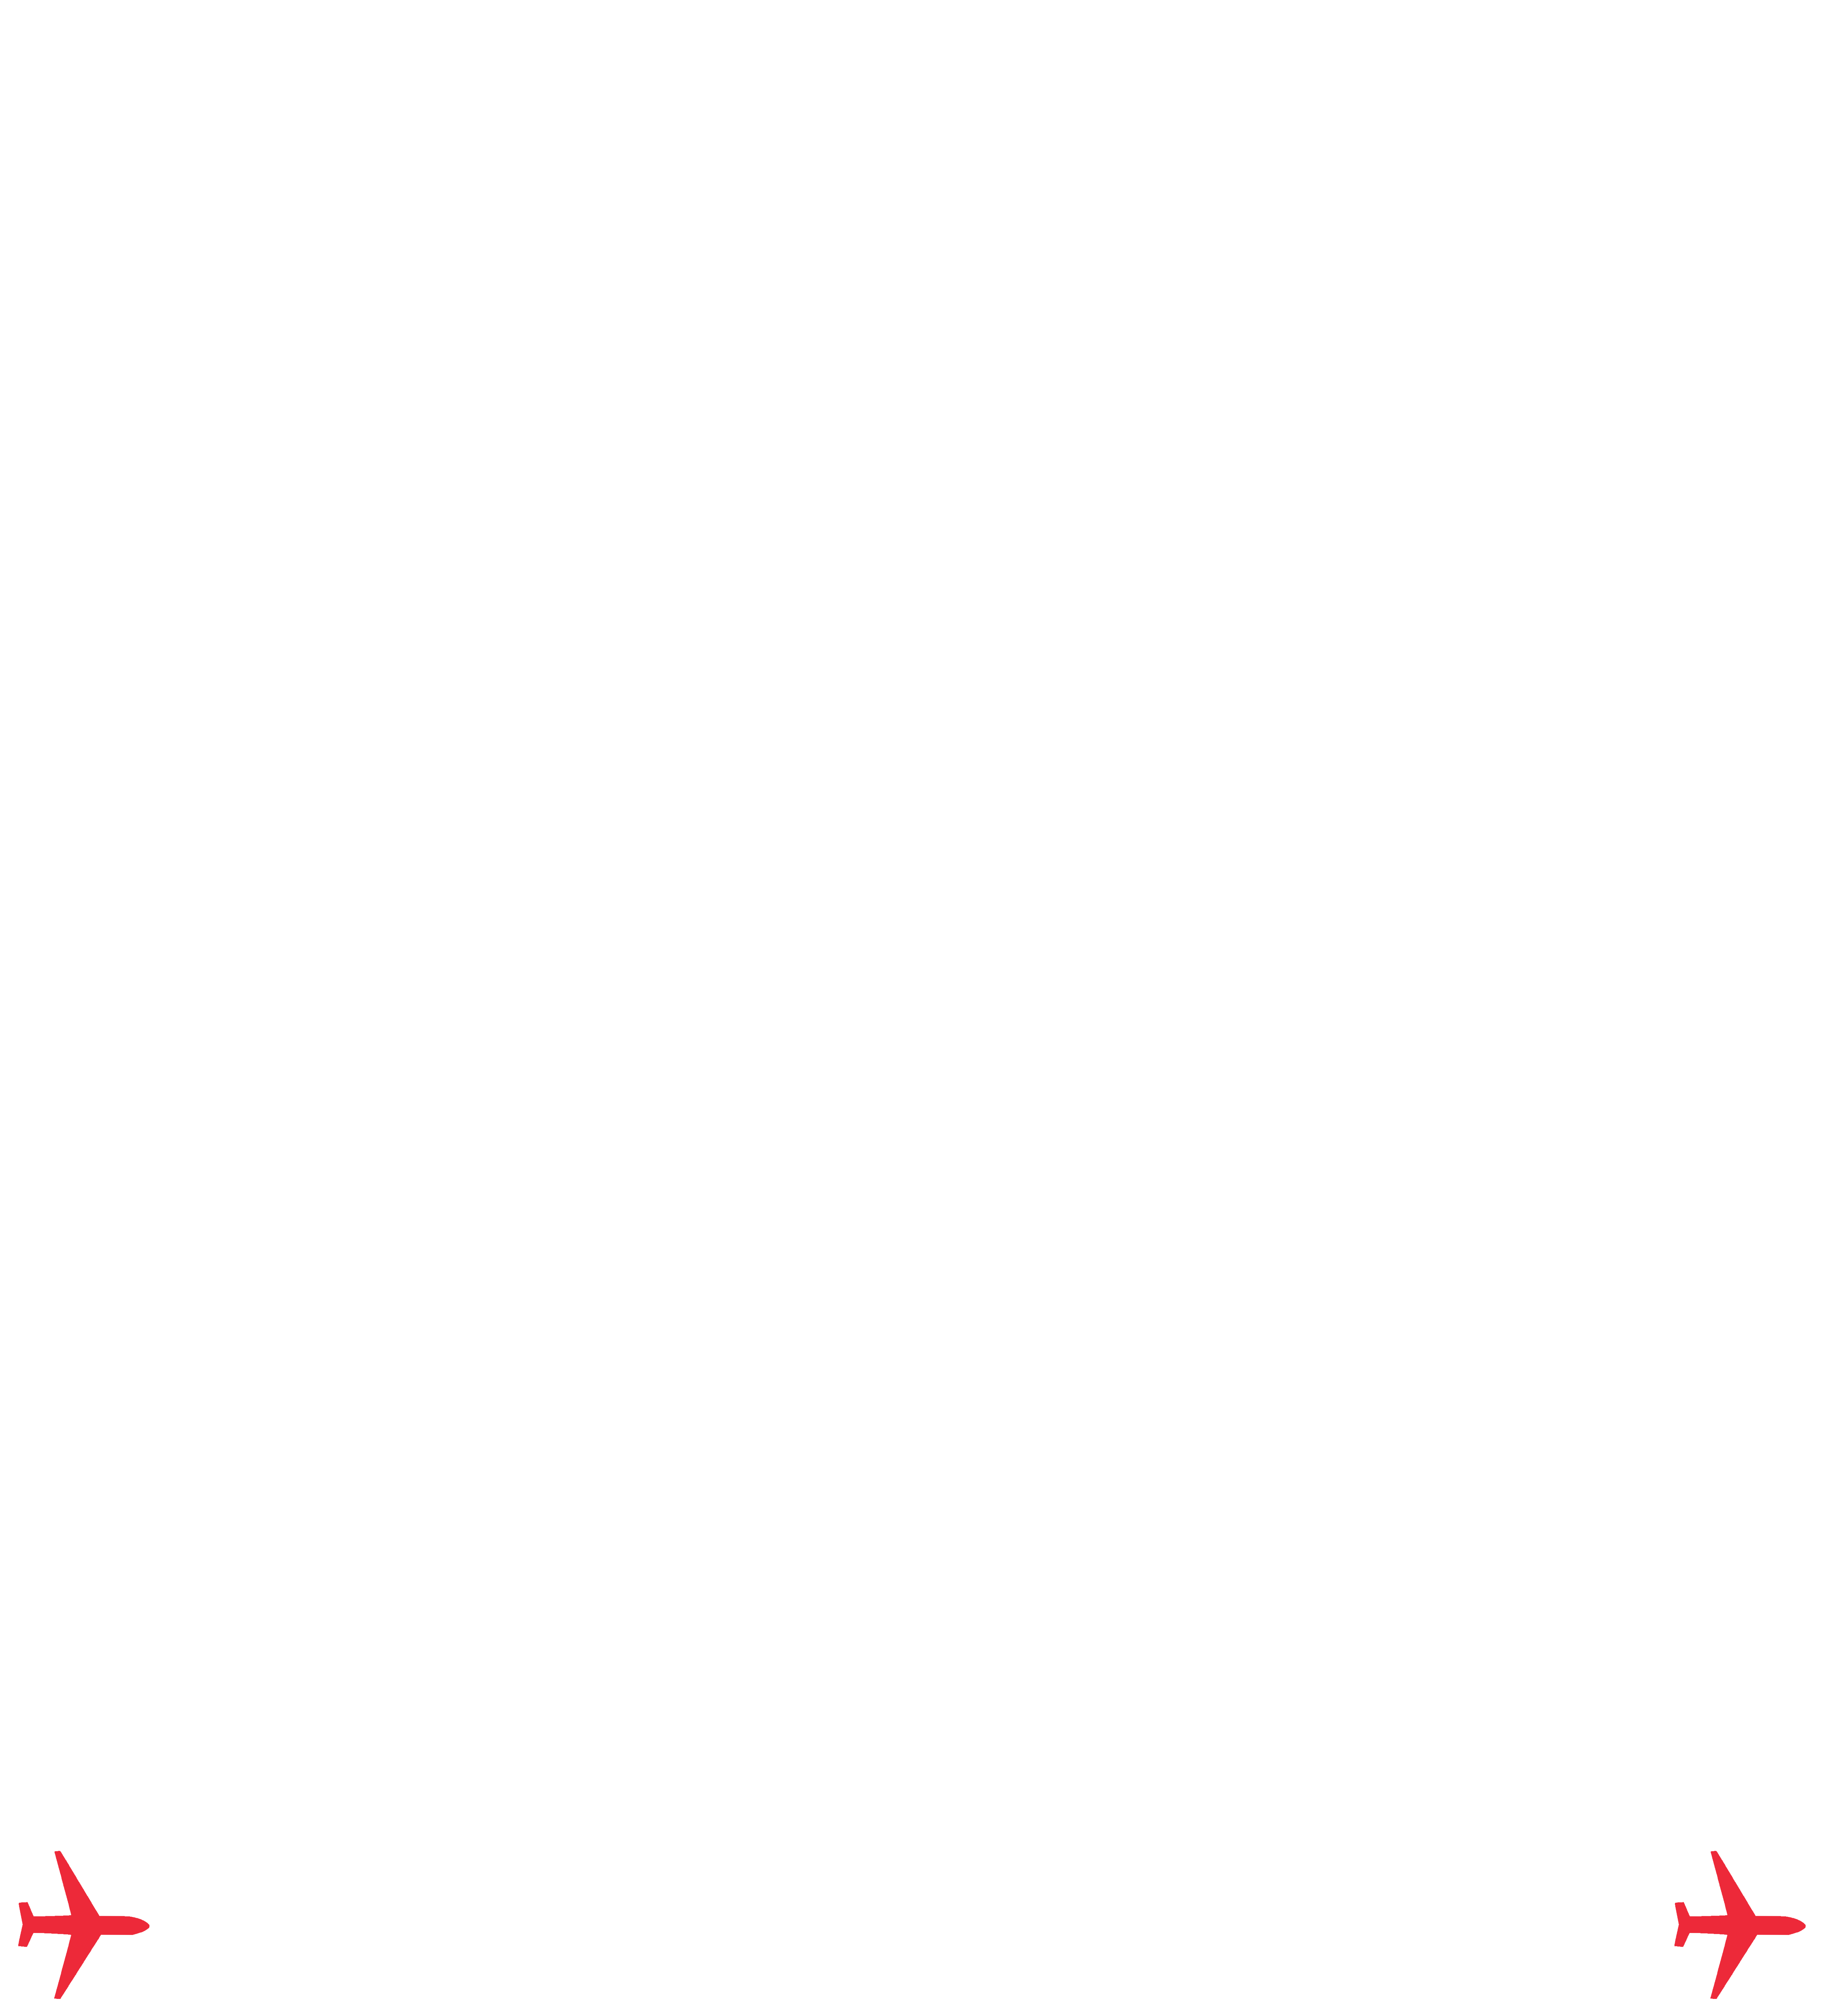 tkt2fly.com.au